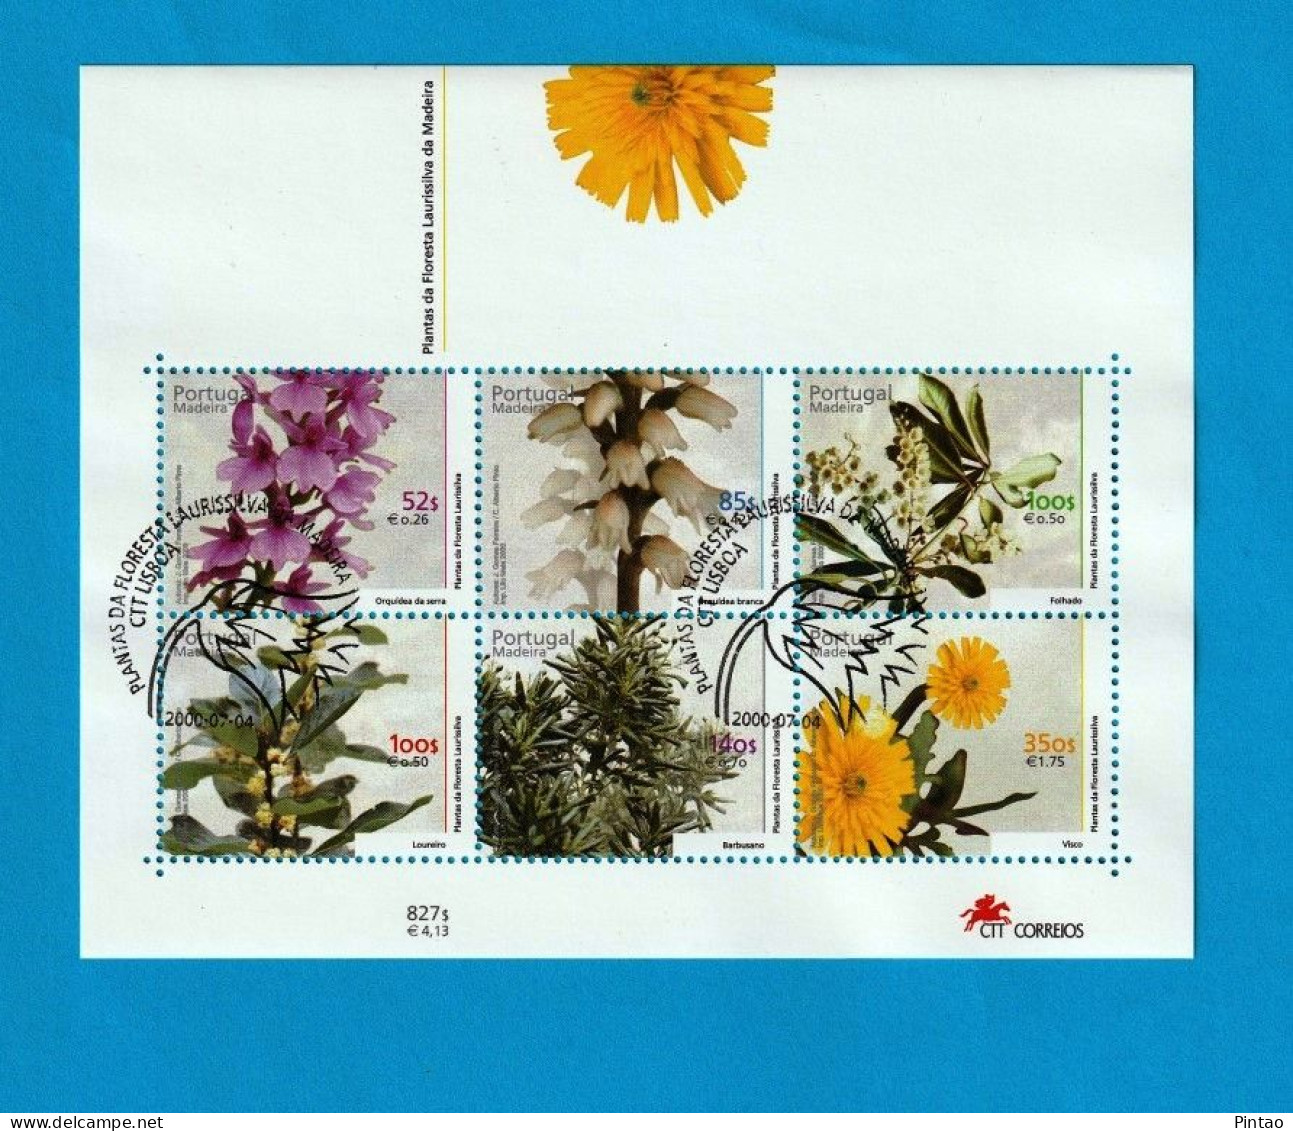 PTB1708- PORTUGAL (MADEIRA) 2000 Nº 234 (selos 2711_ 16)- CTO - Blocs-feuillets